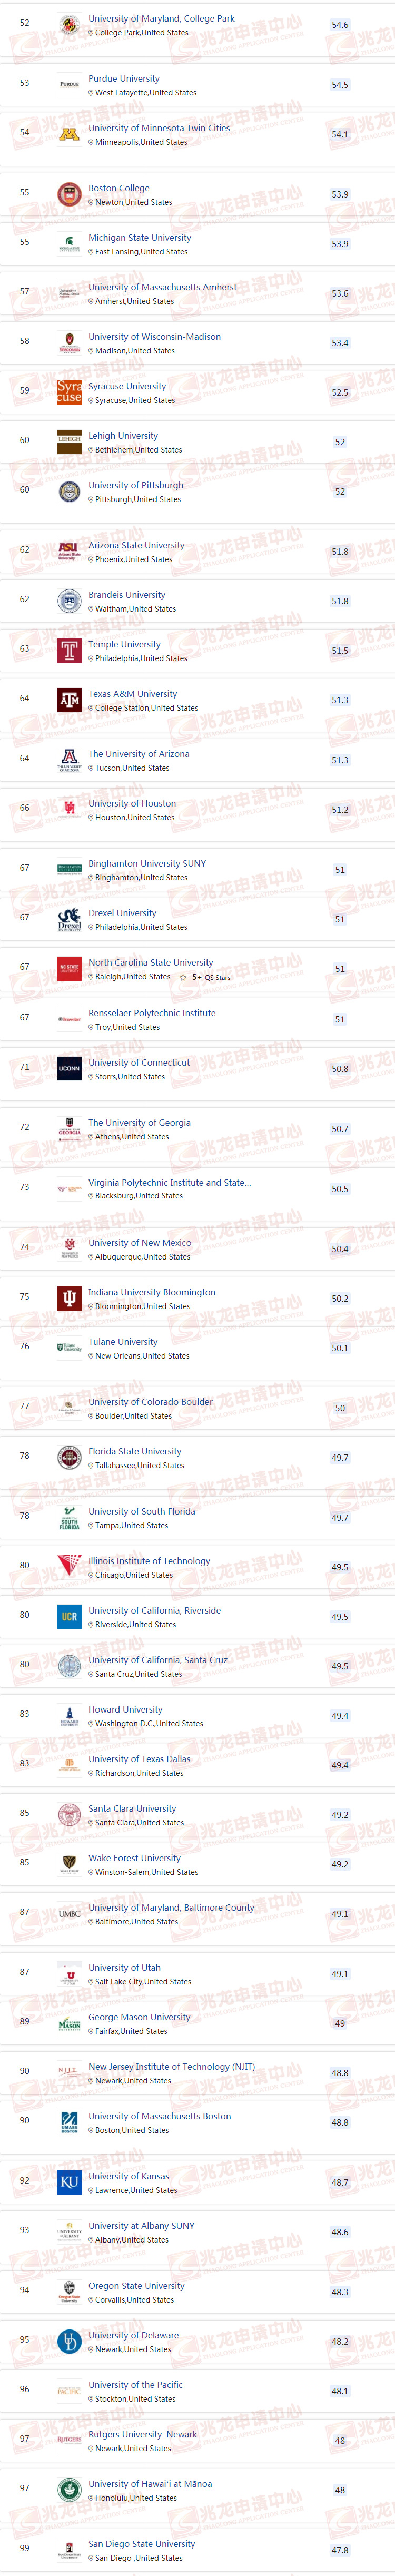 2021美国大学排名TOP51-100-兆龙留学1.jpg